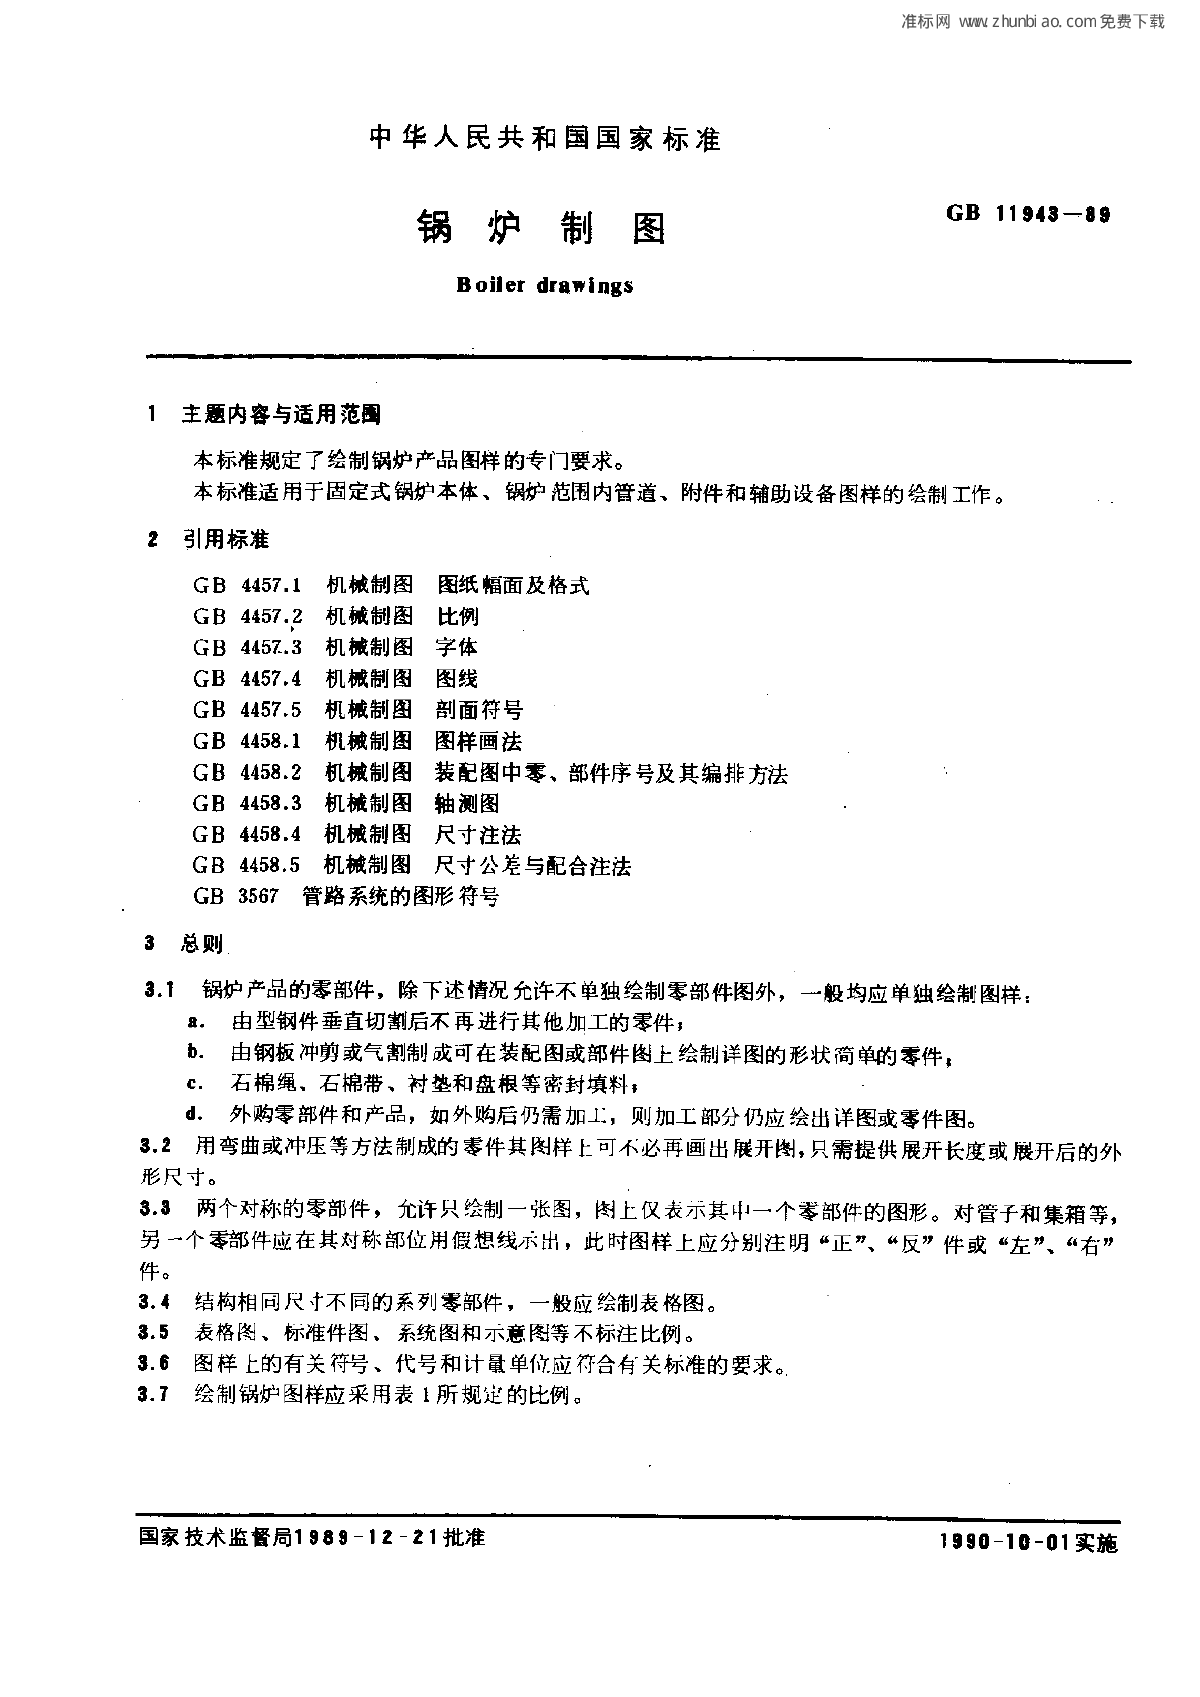 GB 11943-1989 锅炉制图-图一